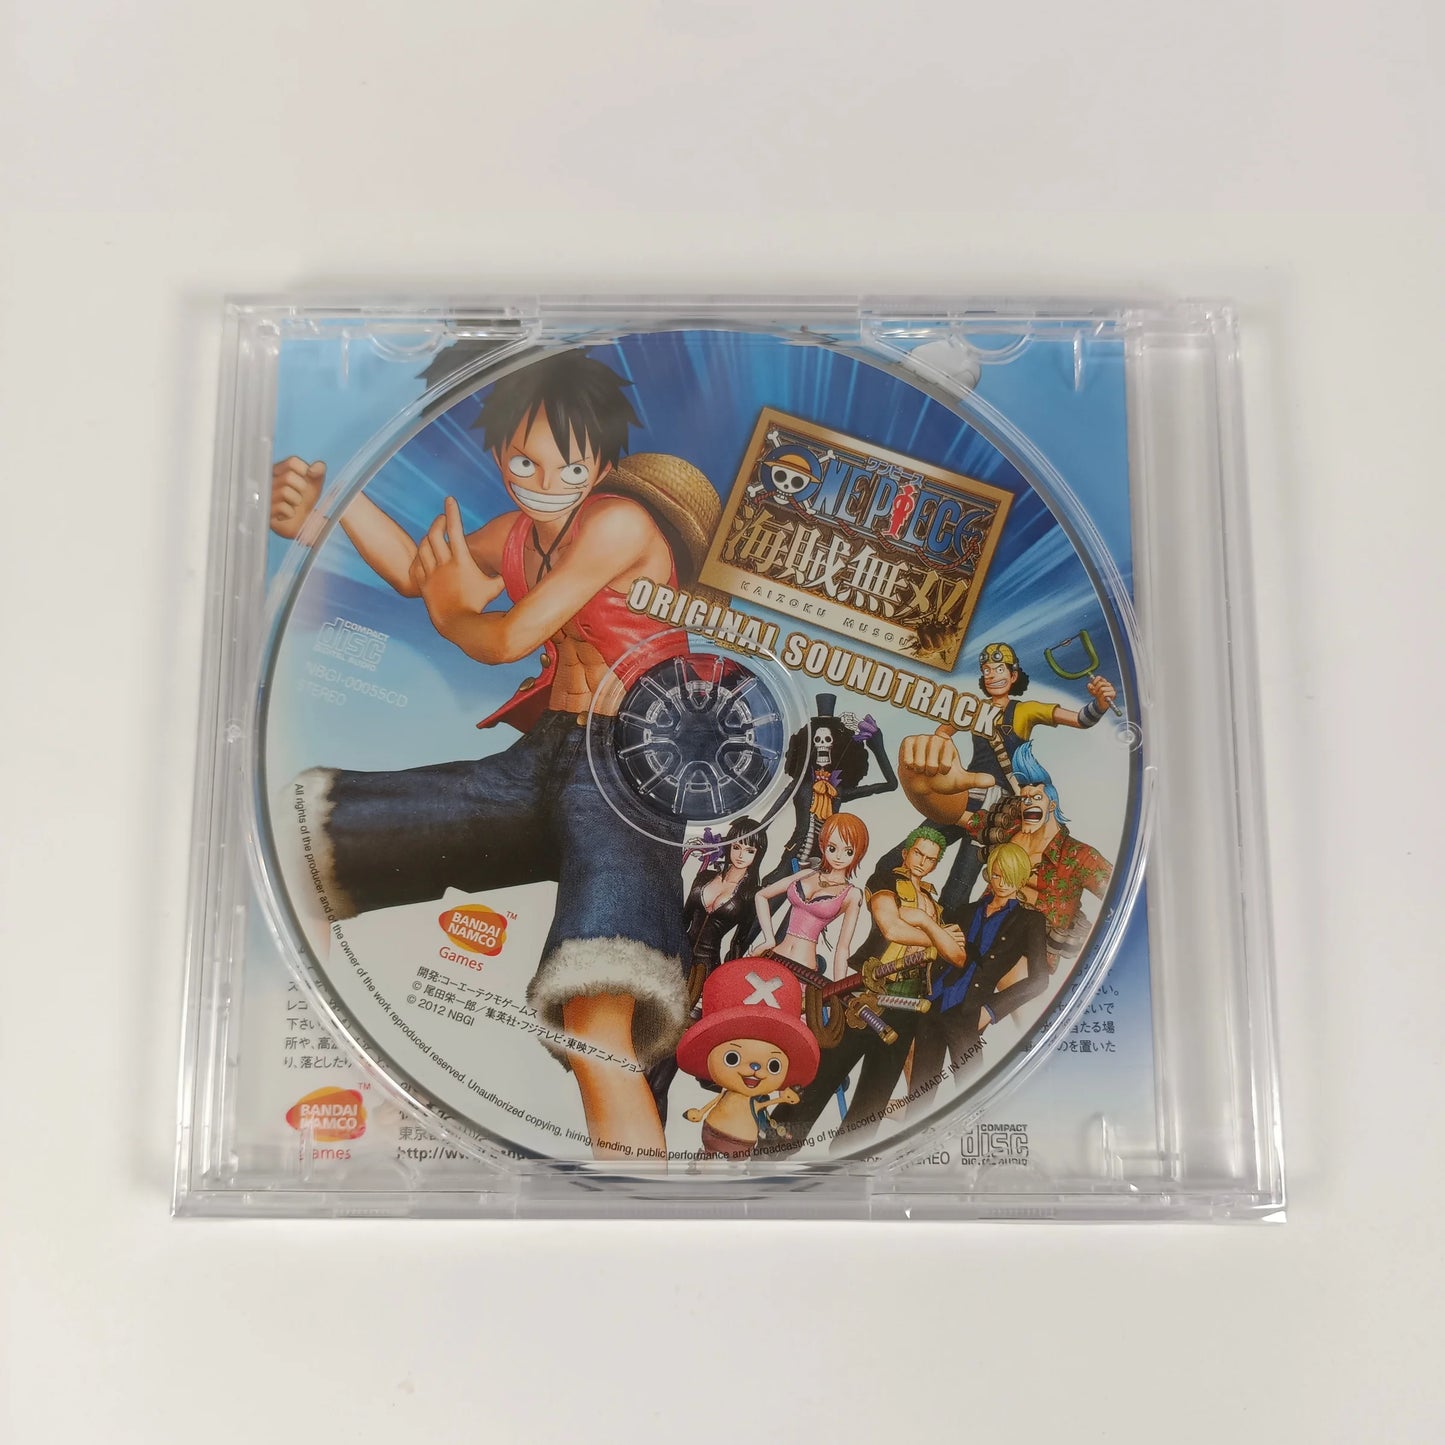 OST de One Piece: Pirate Warriors